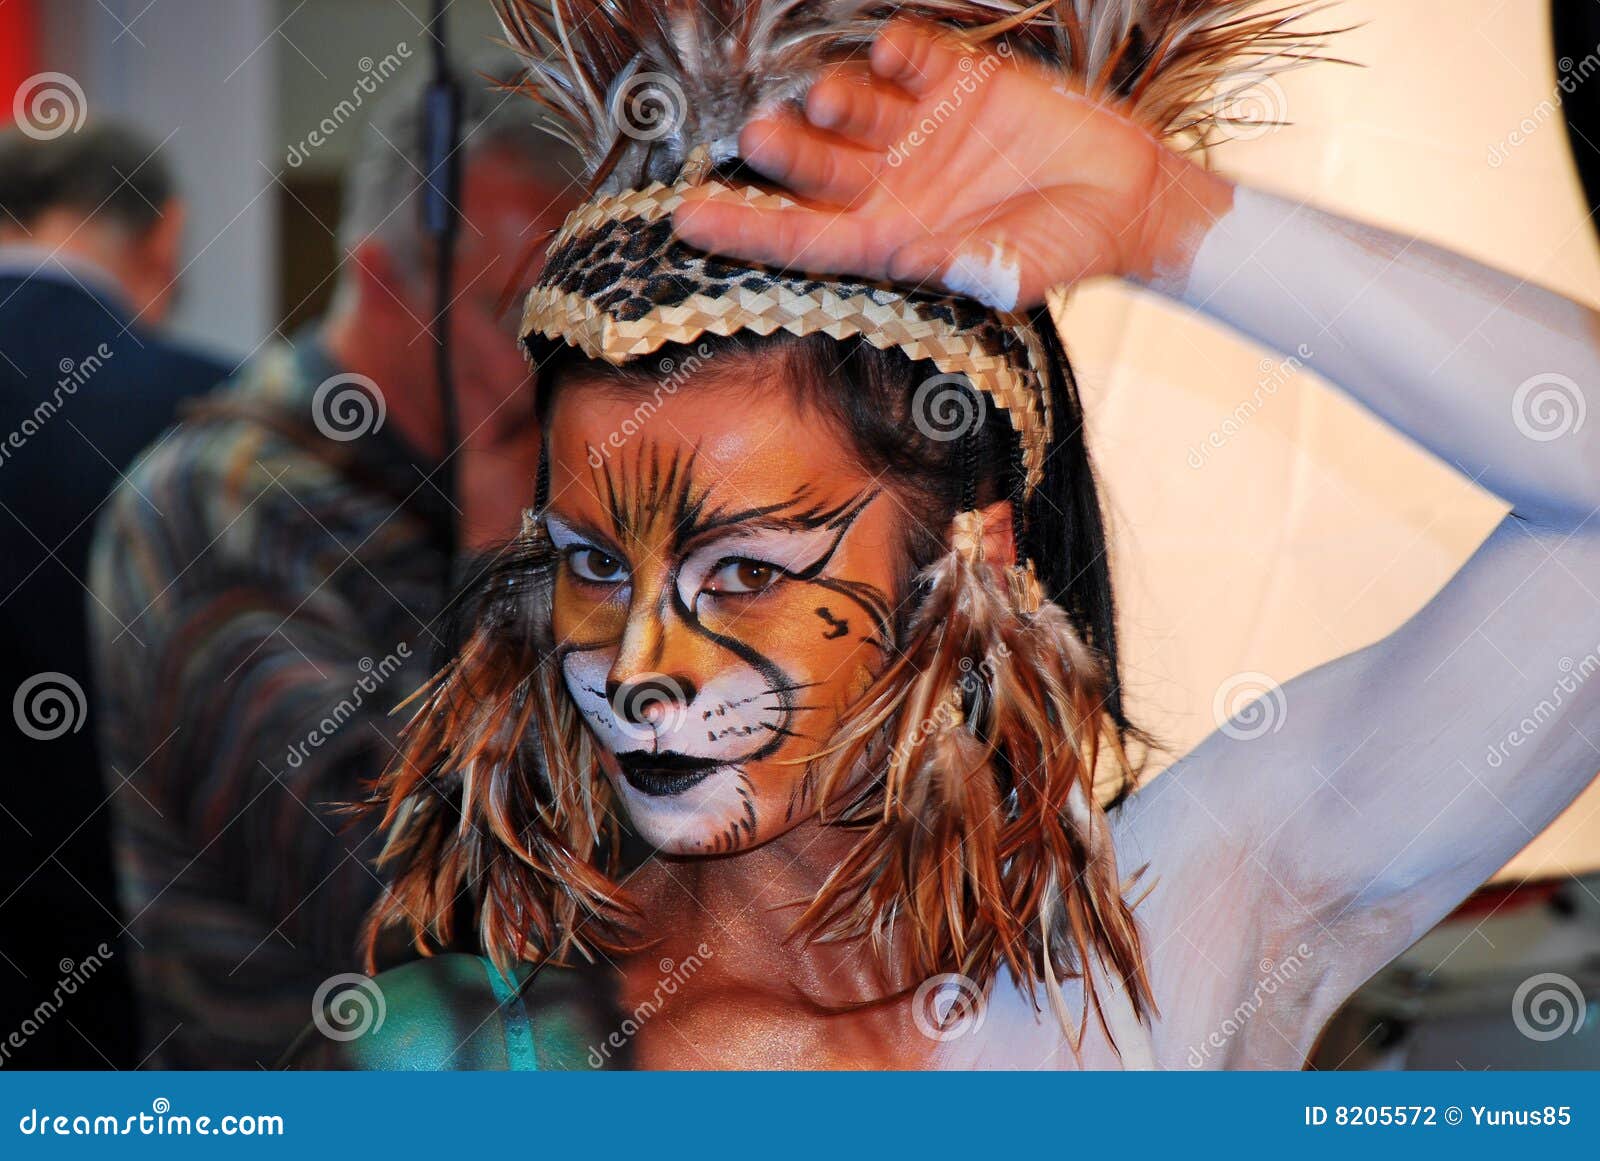 Sintético 66 + Artistico maquillaje de leona - Castabrava